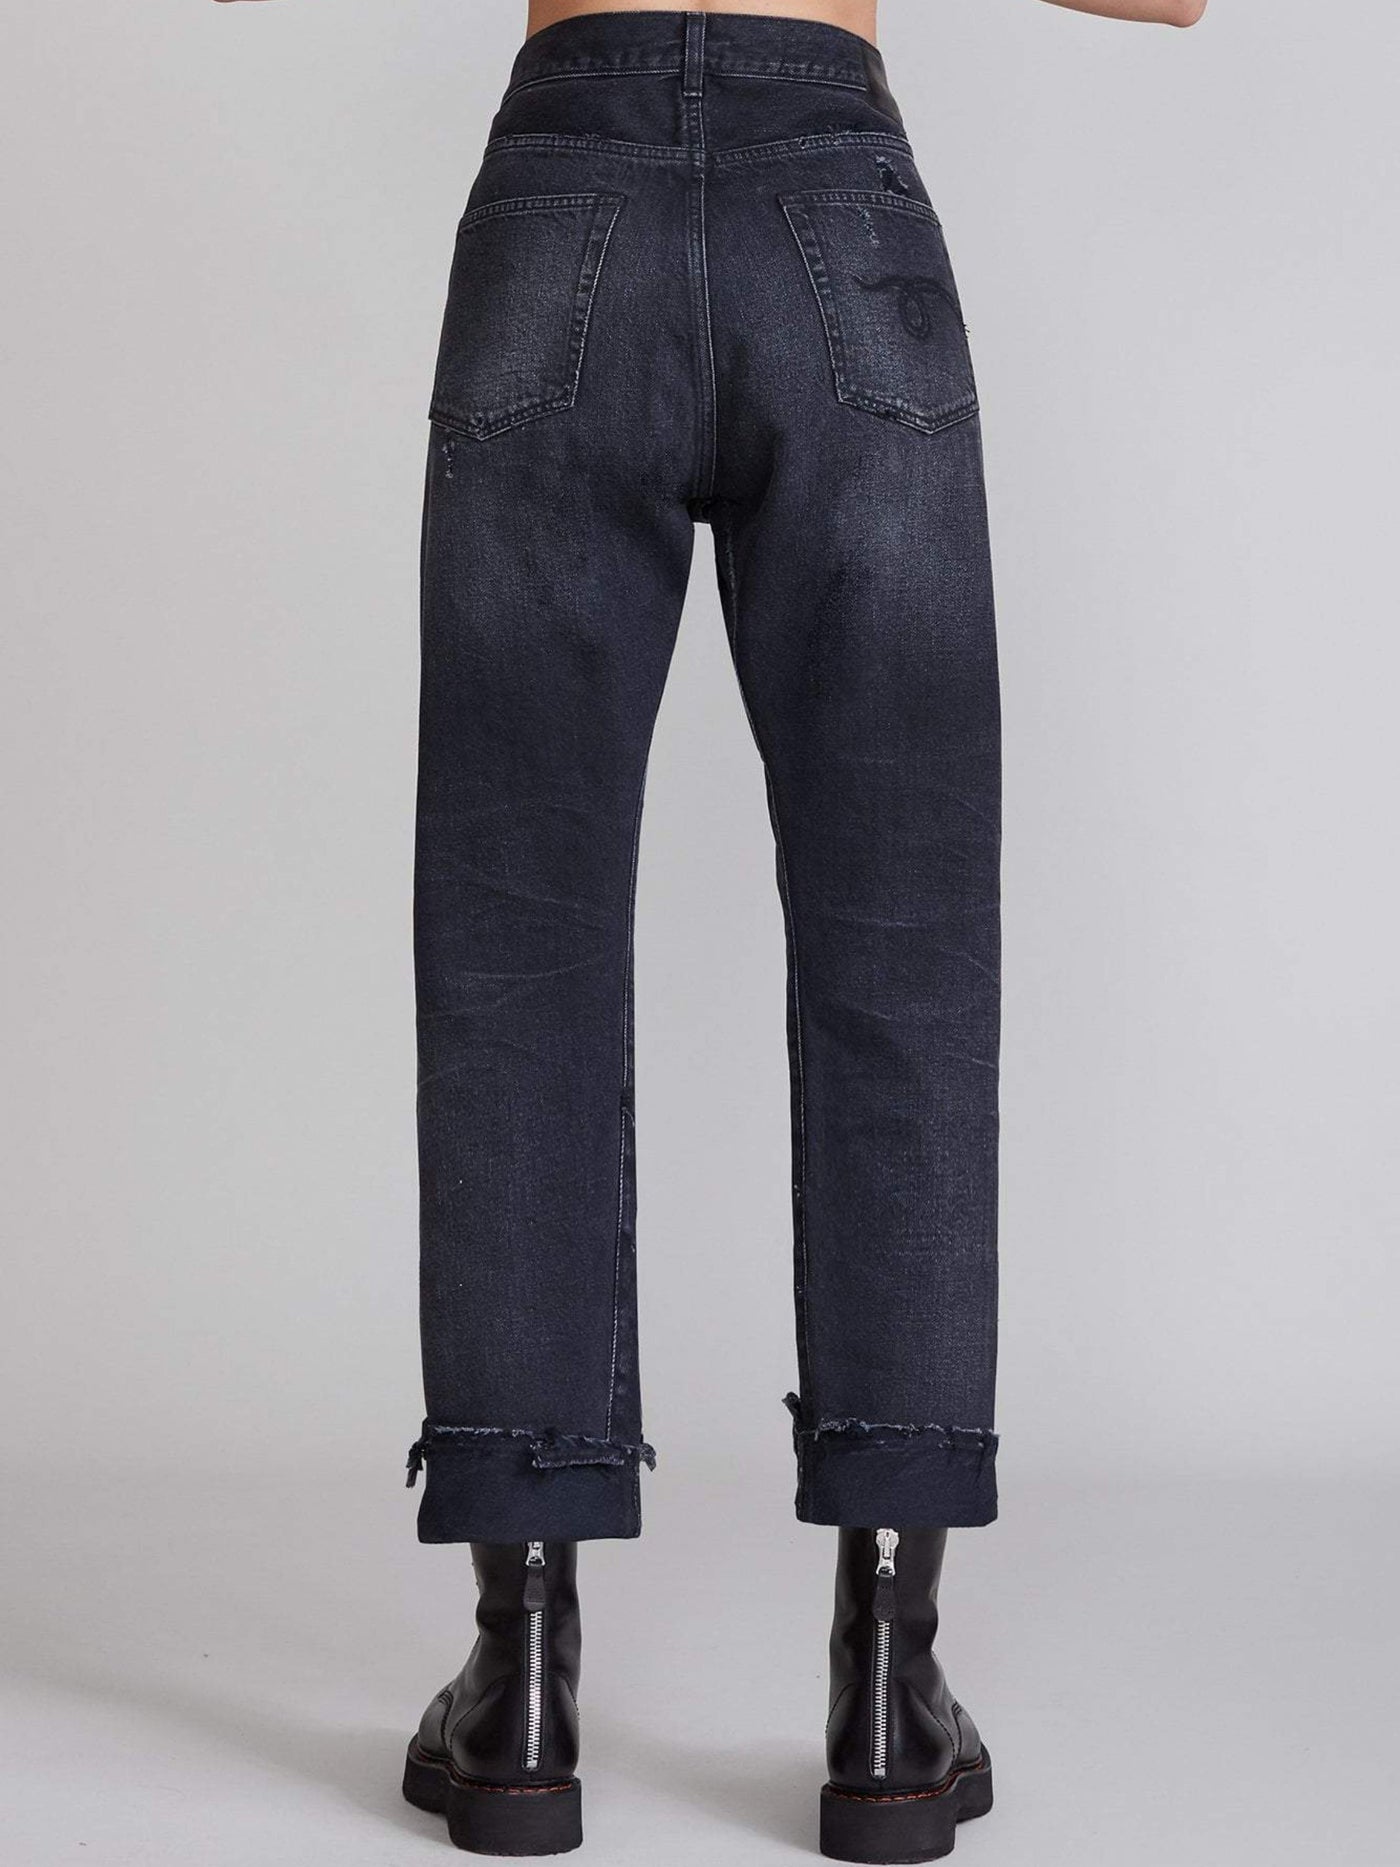 R13 Jeans | Cross Over Jeans - Jake Black | W2048-394 101A jake black-0 / ADAM/EVE